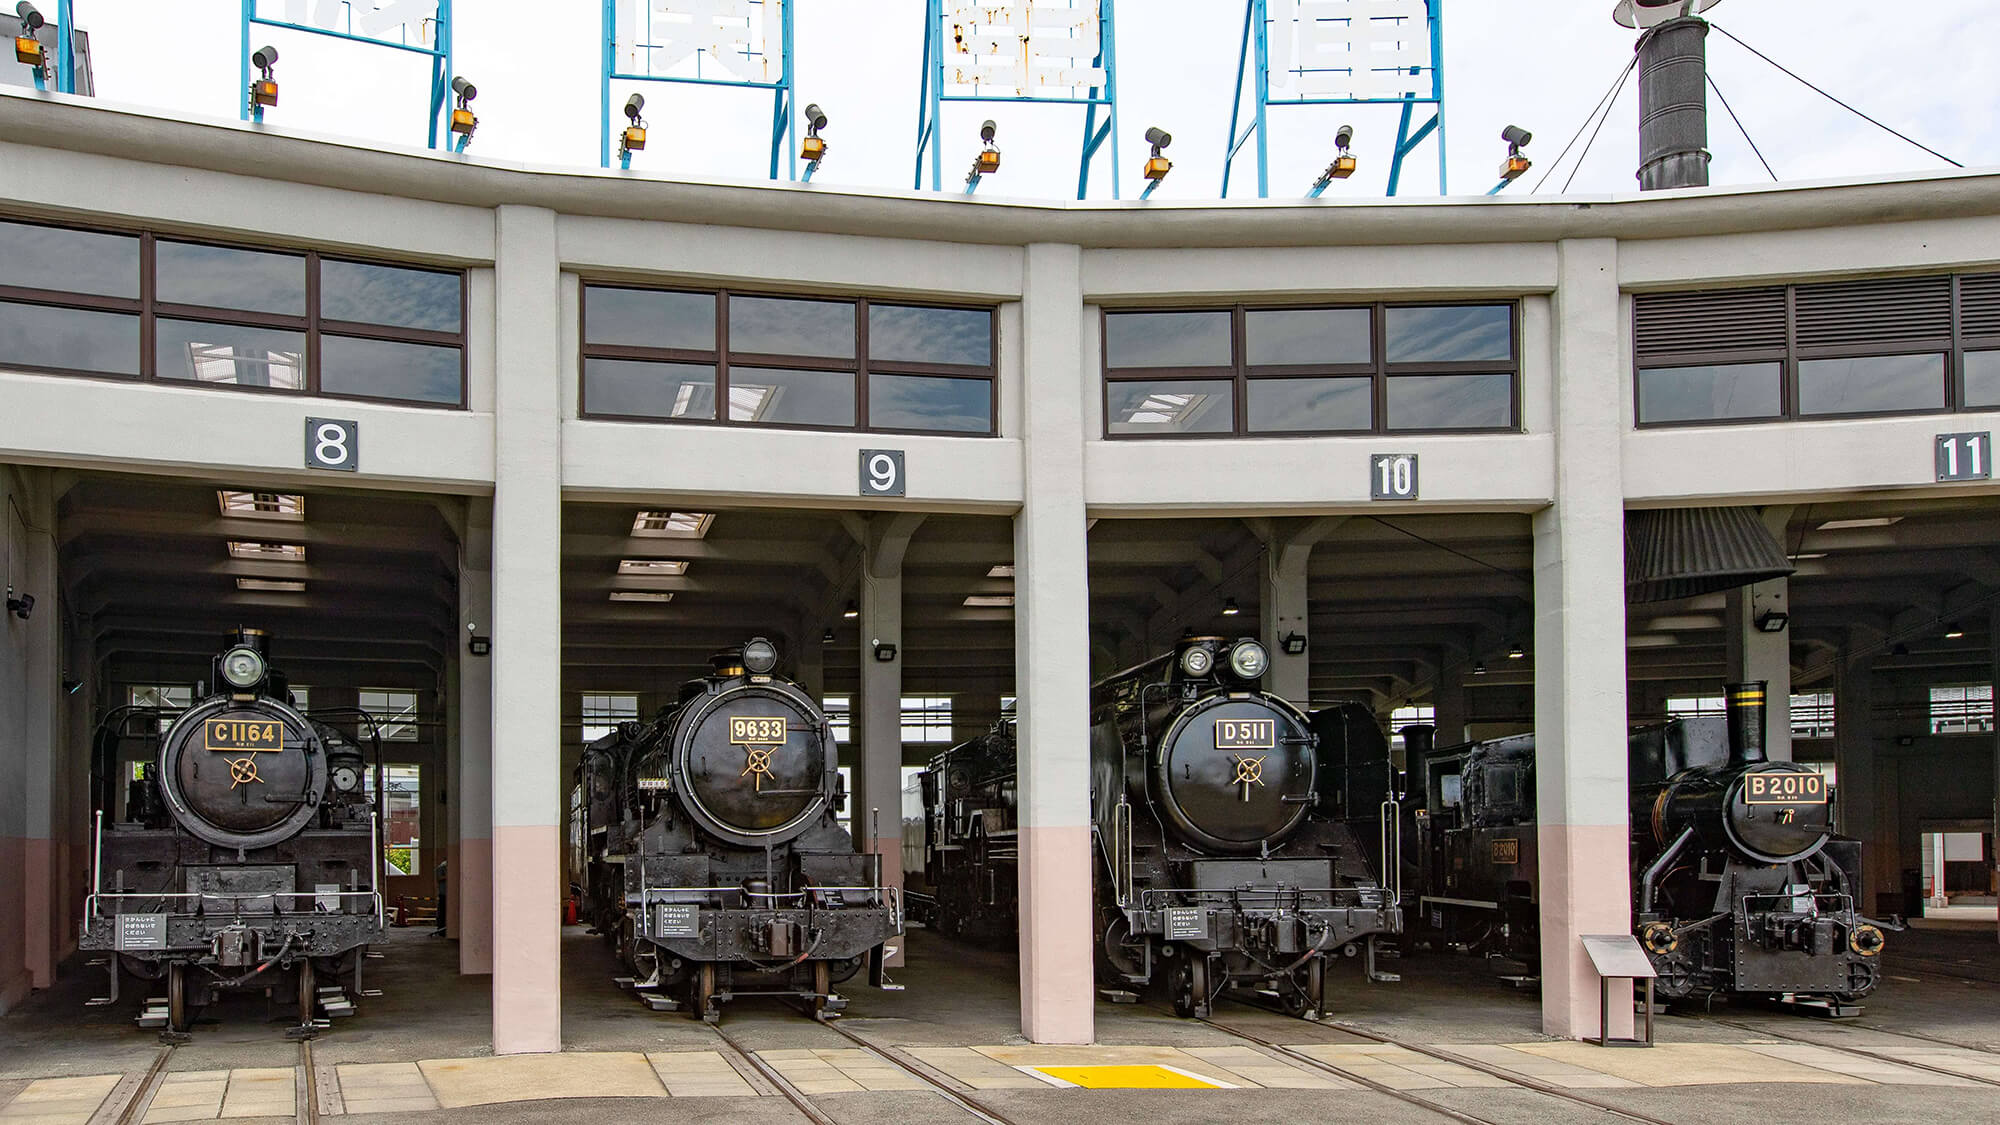 【京都鉄道博物館】梅小路京都西駅から徒歩約2分にある、国内最大級の鉄道博物館。